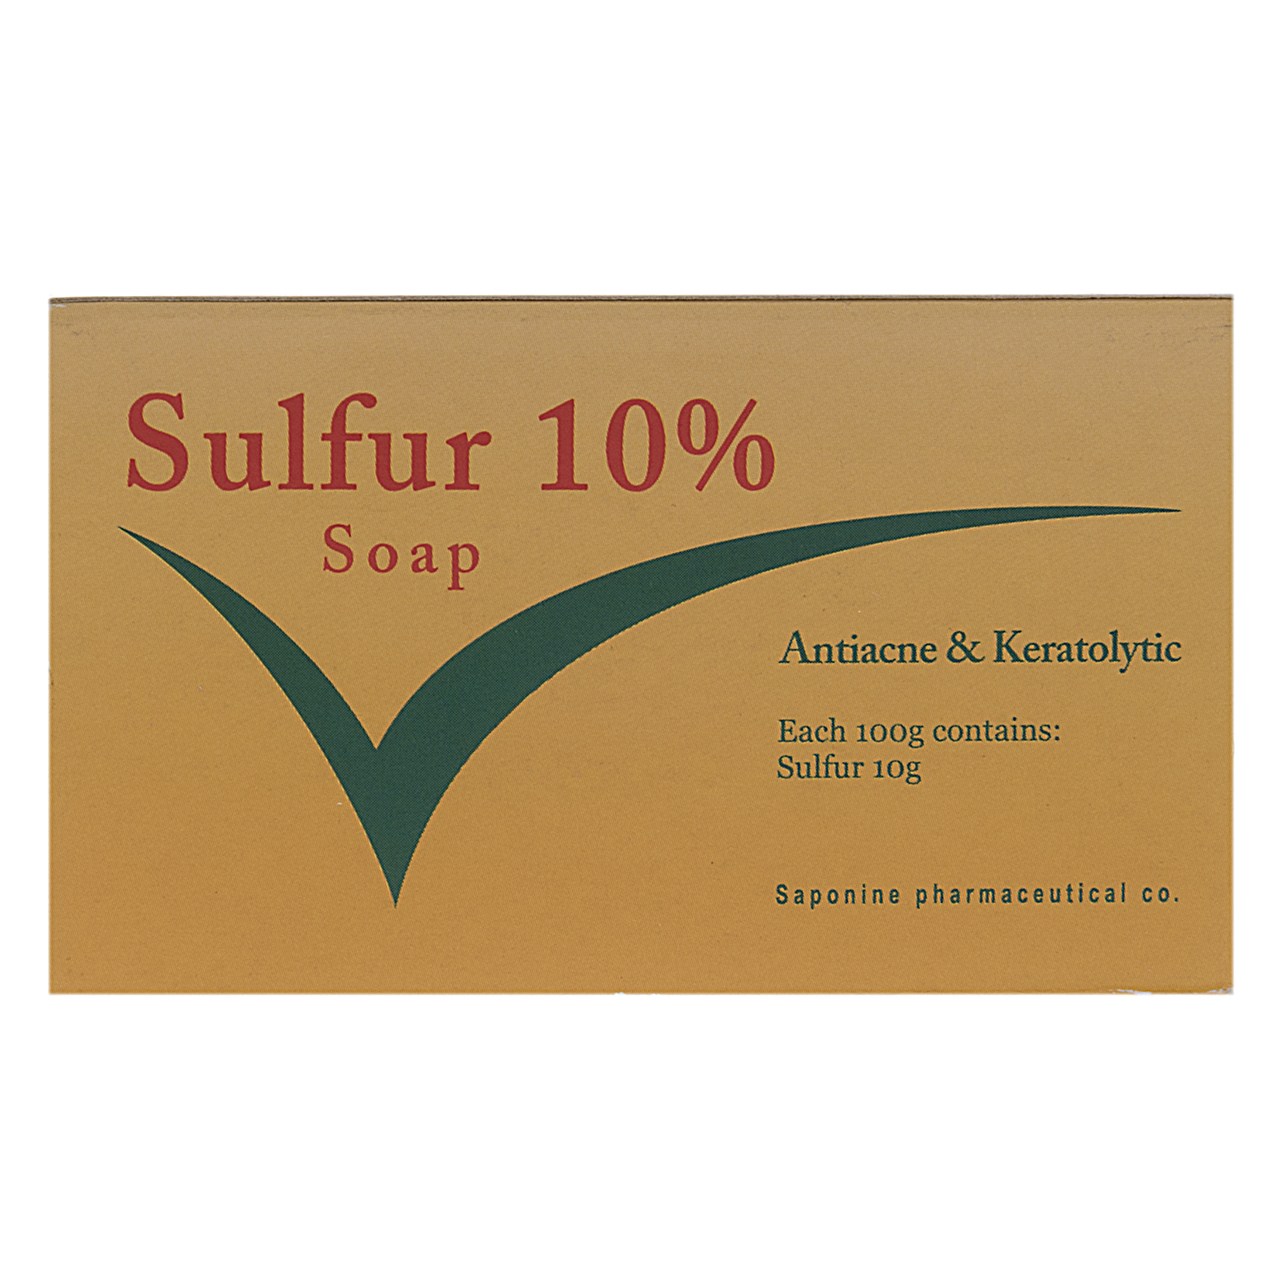 صابون گوگرد ساپونین مدل Sulfur 10% مقدار 100 گرم